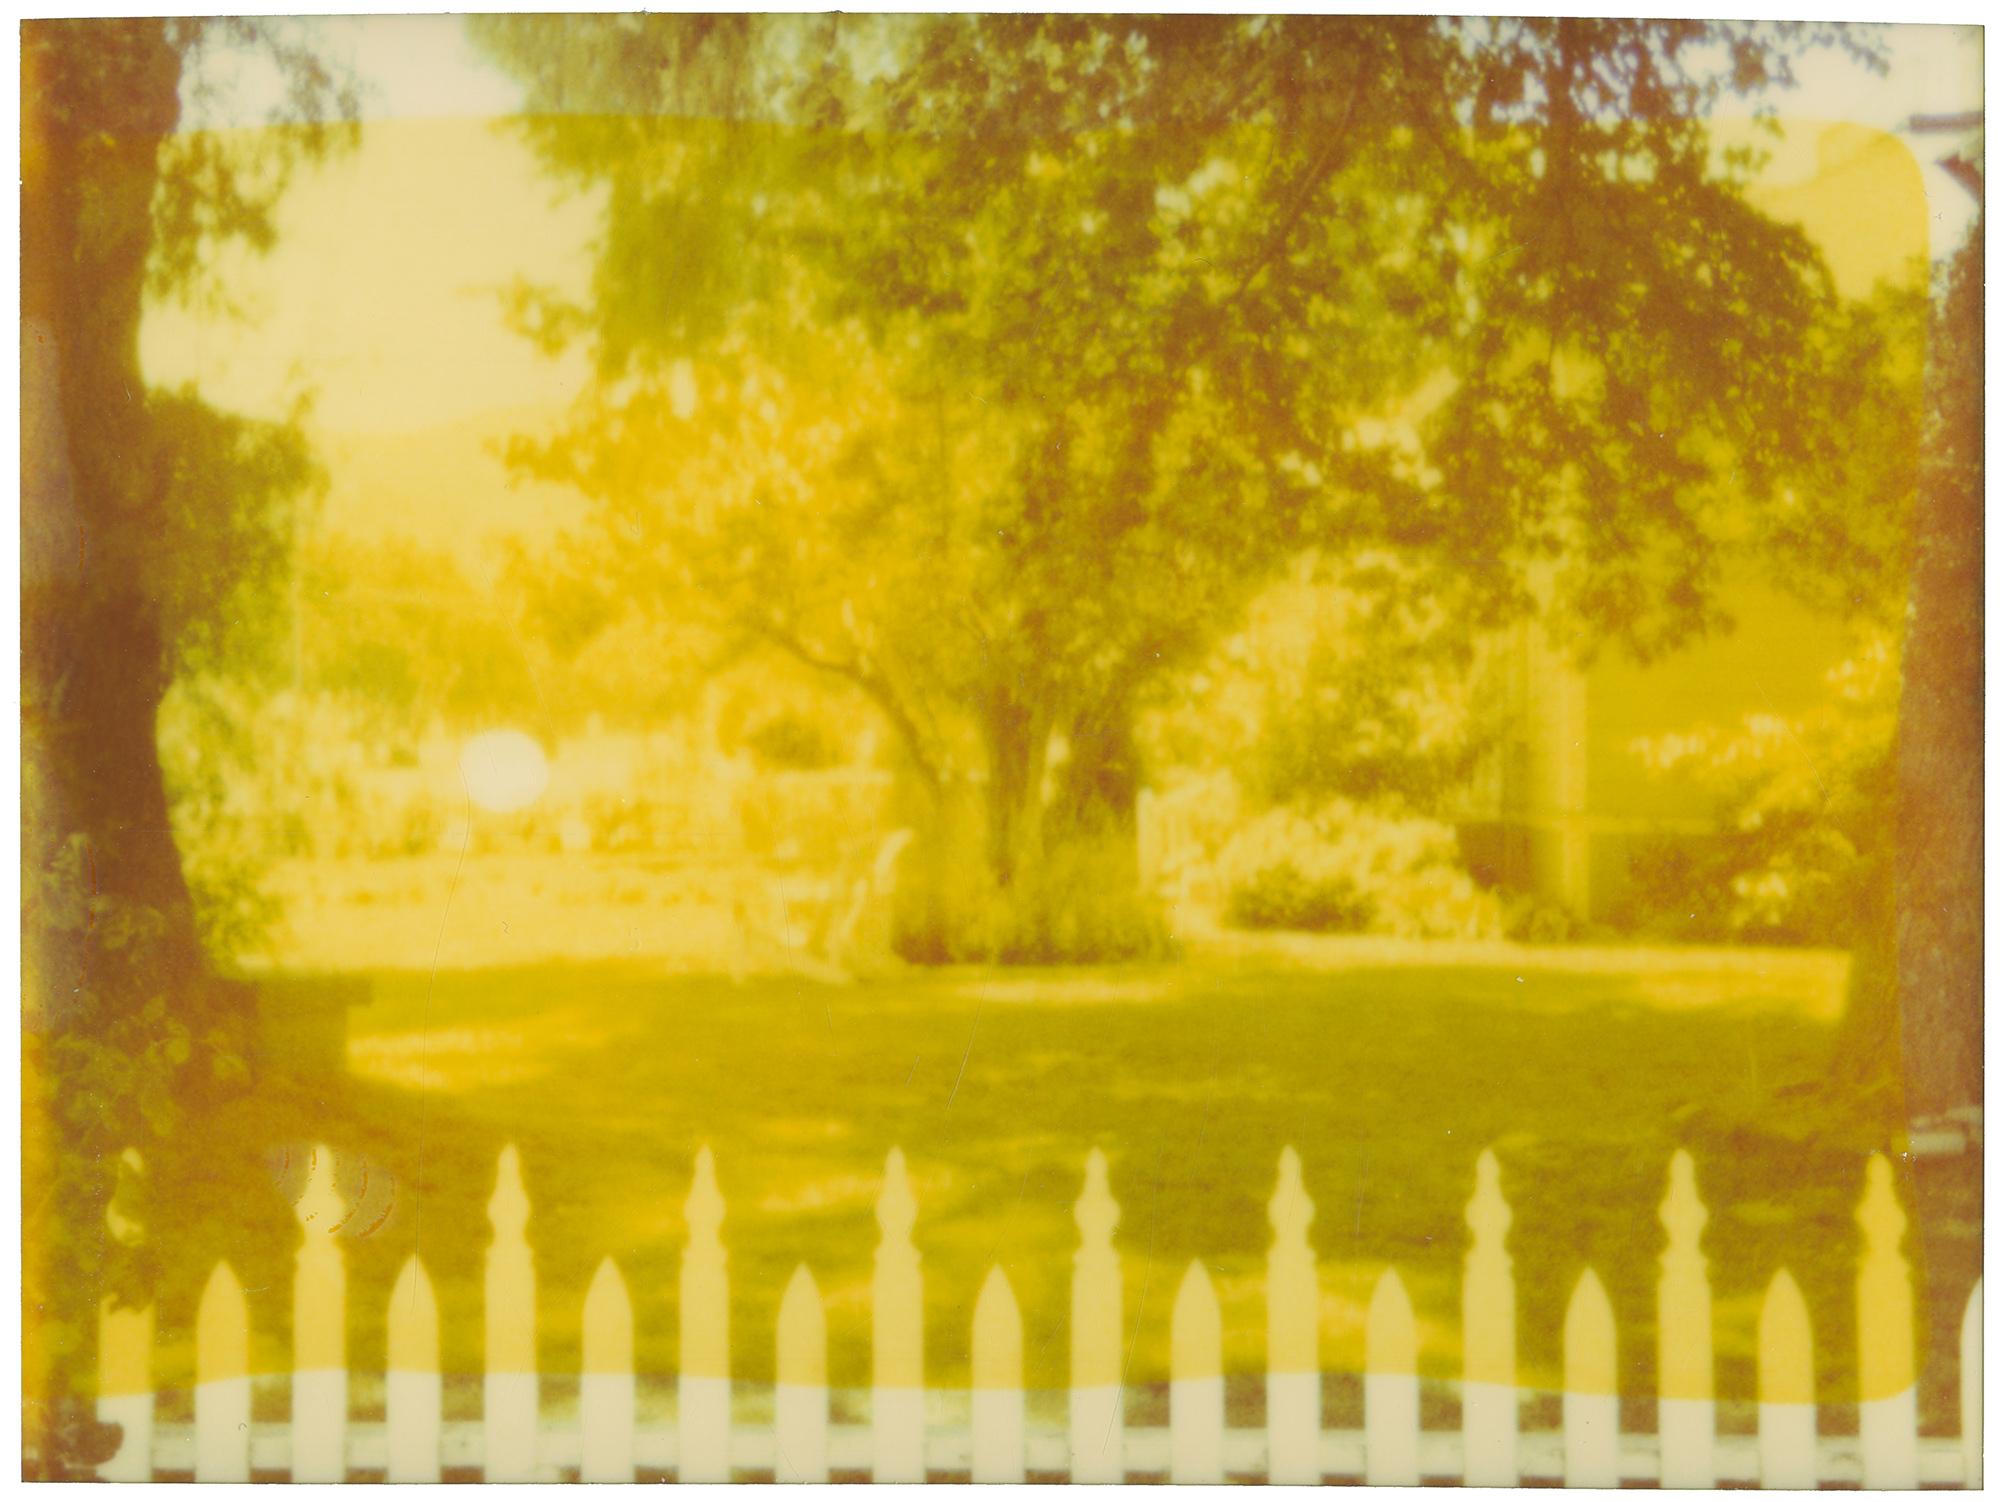 White Picket Fence (Suburbia), diptych, analog, mounted, Polaroid, Photograph (Braun), Landscape Photograph, von Stefanie Schneider